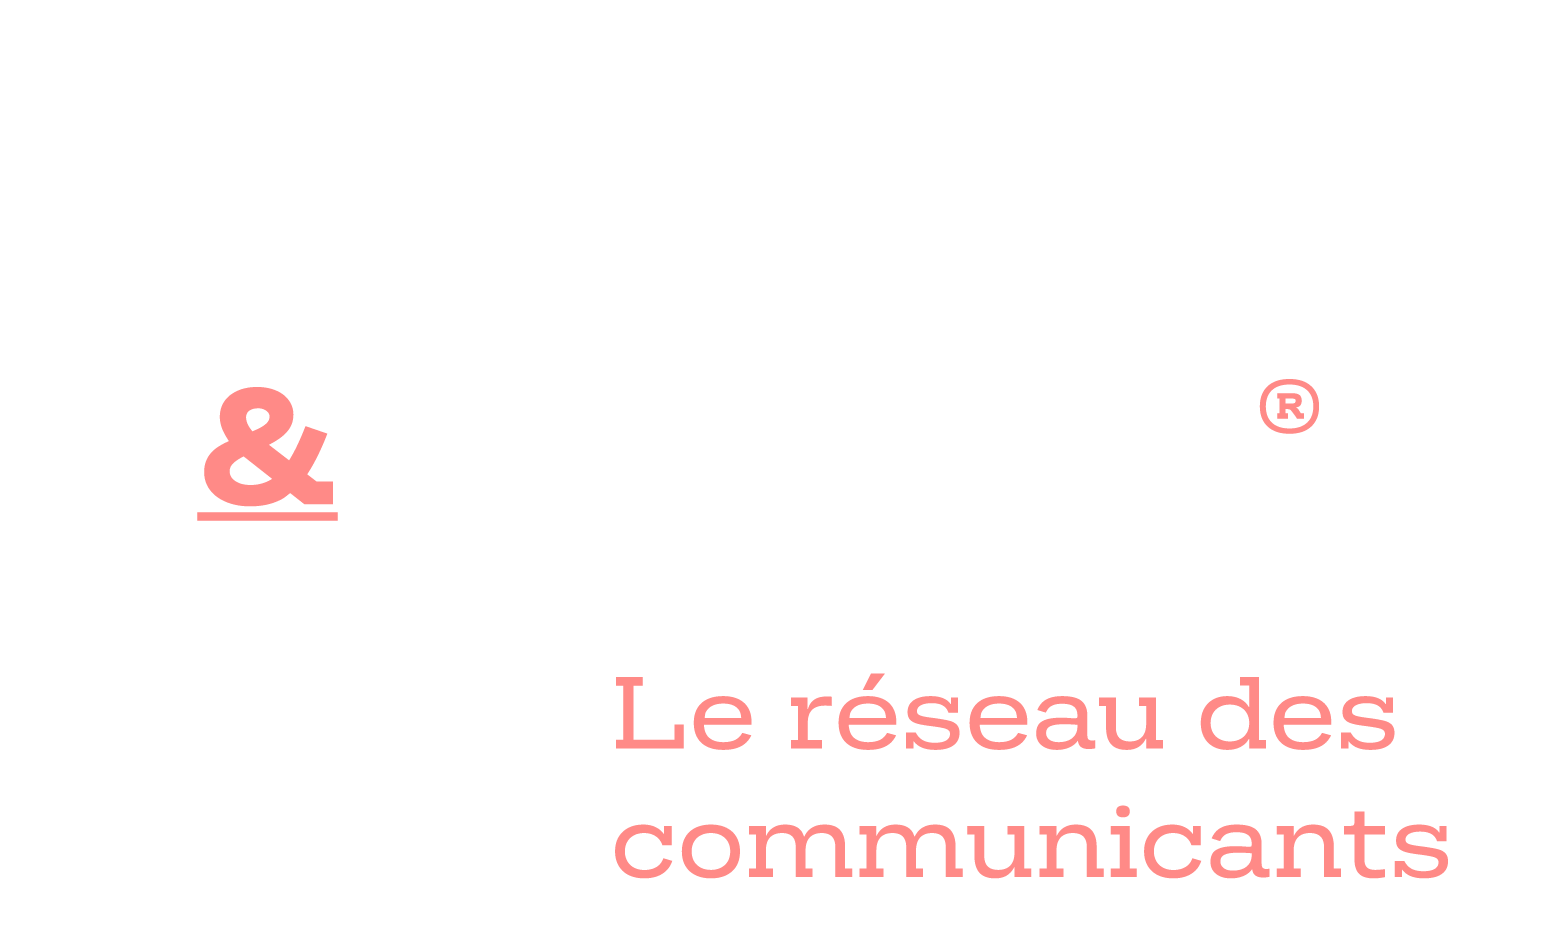 Félix & Rosa